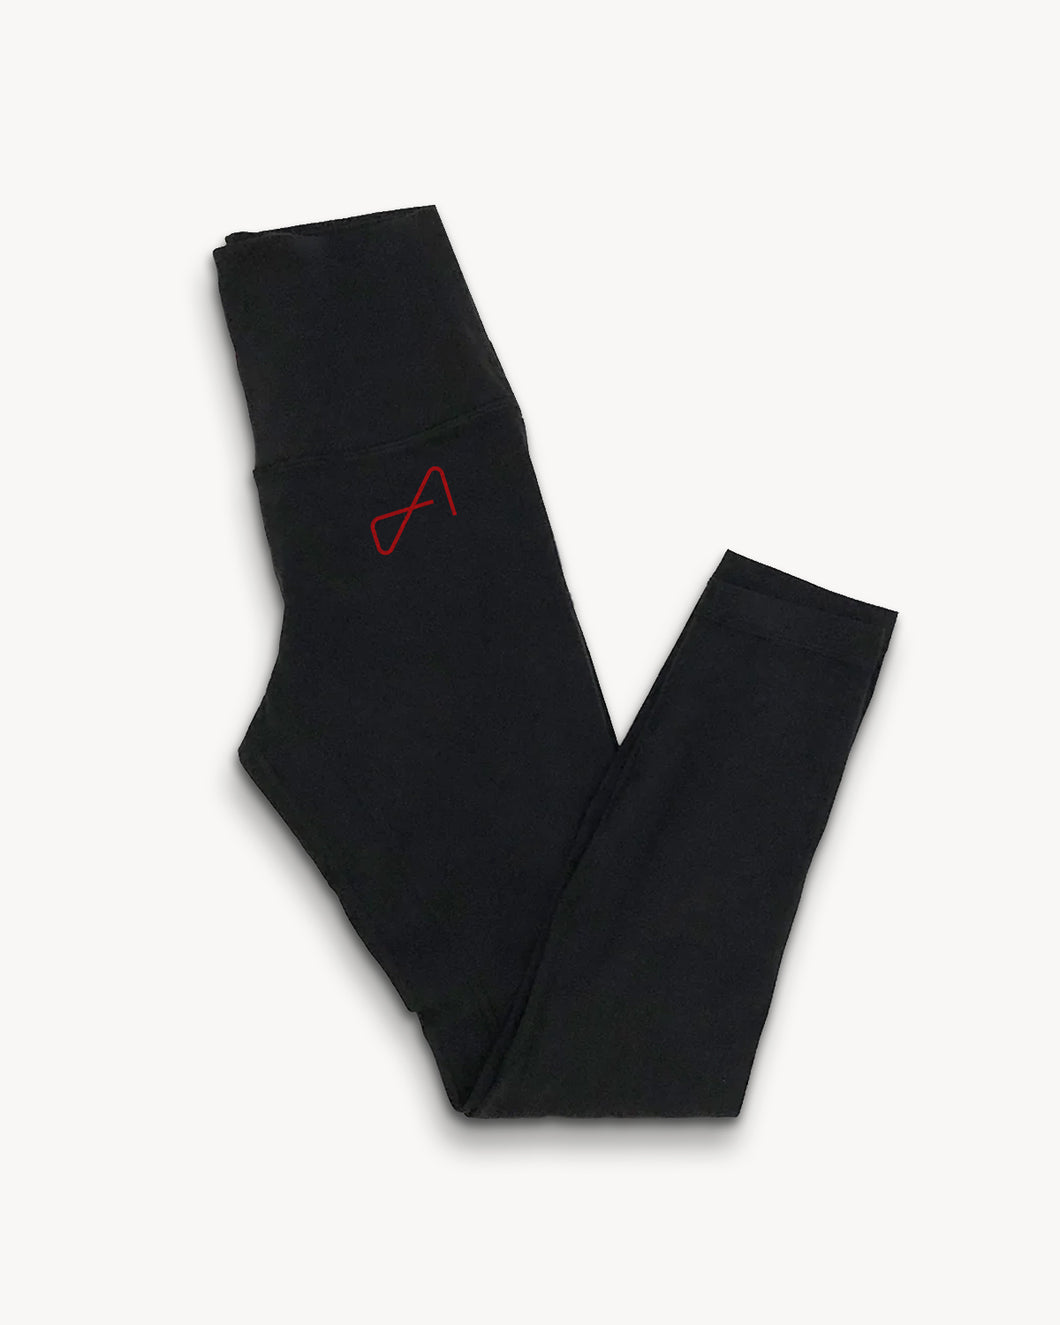 Lululemon Align Pant II – The Agency Merchandise